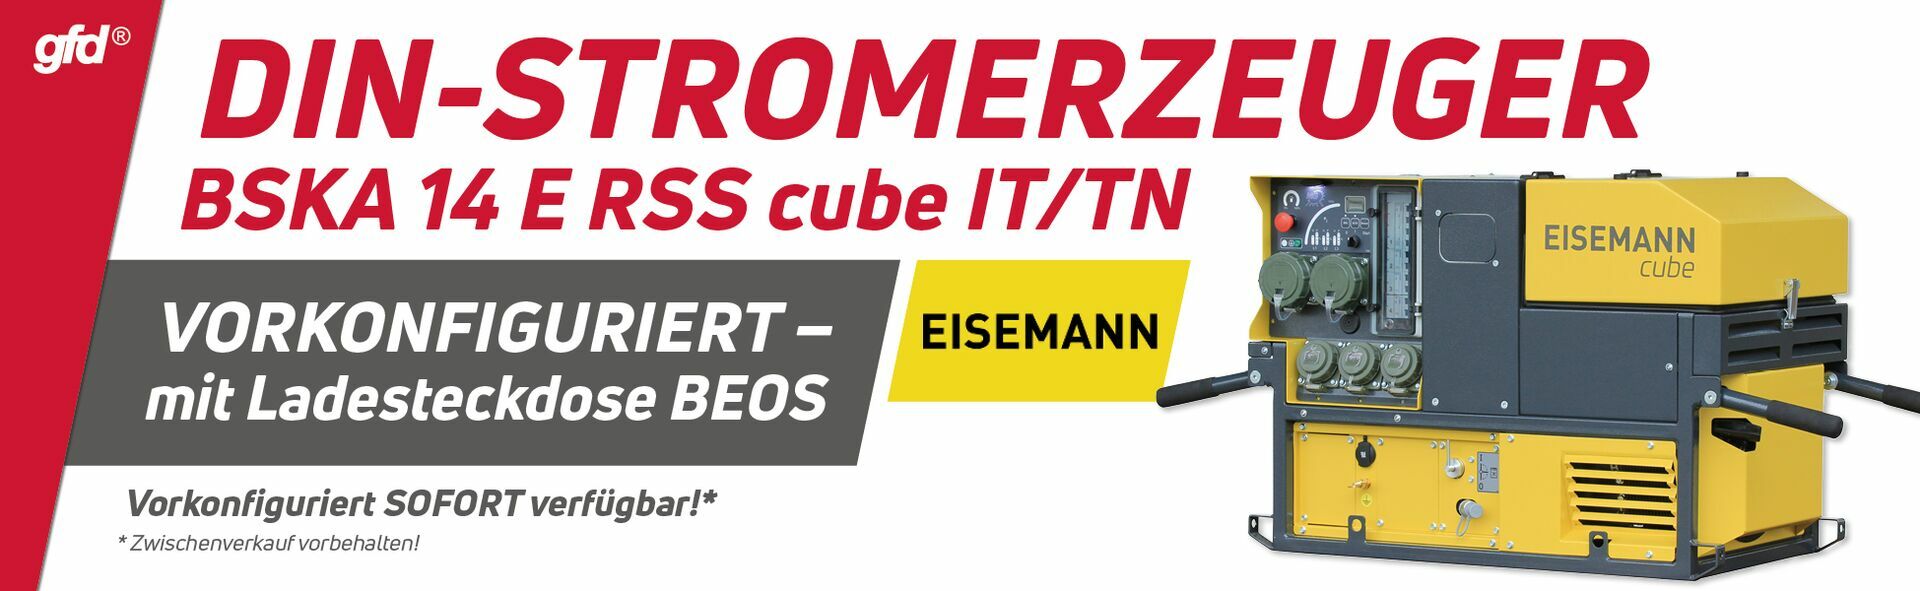 DIN-Stromerzeuger EISEMANN BSKA 14 E RSS cube IT/TN